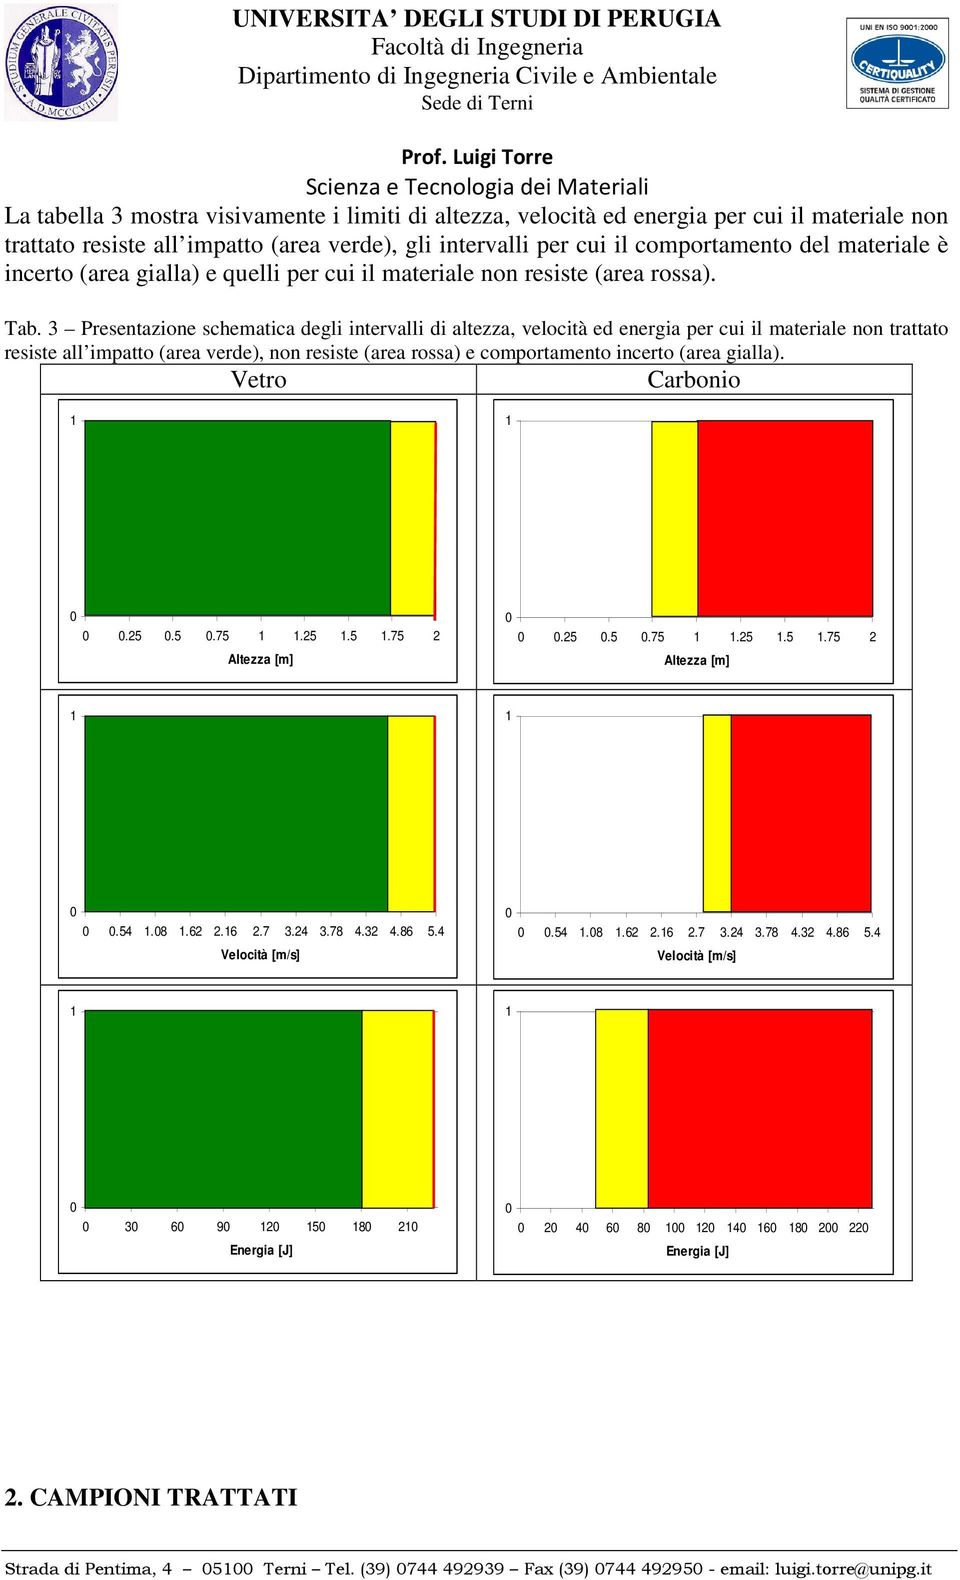 3 Presentazione schematica degli intervalli di altezza, velocità ed energia per cui il materiale non trattato resiste all impatto (area verde), non resiste (area rossa) e comportamento incerto (area